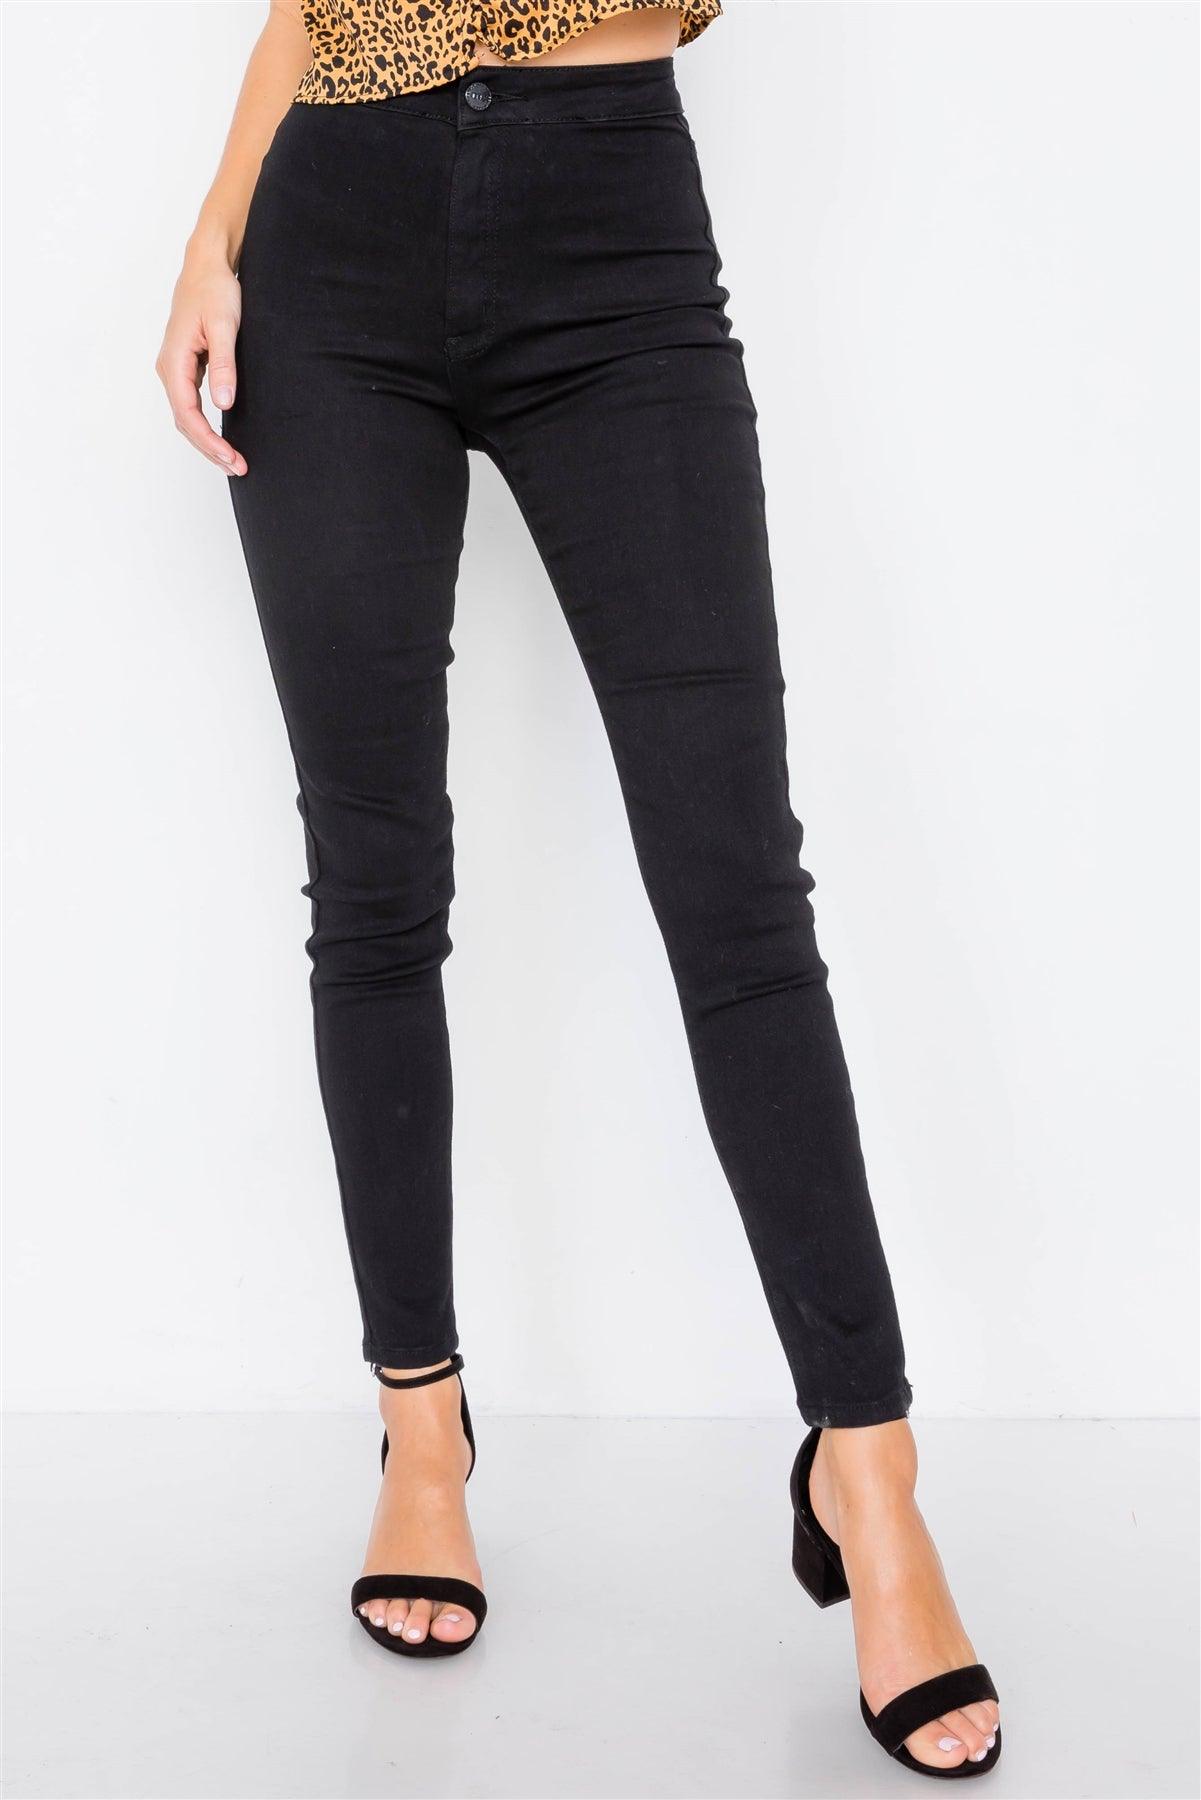 Wholesale Solid Vintage High-Waist Basic Black Cotton Jeans